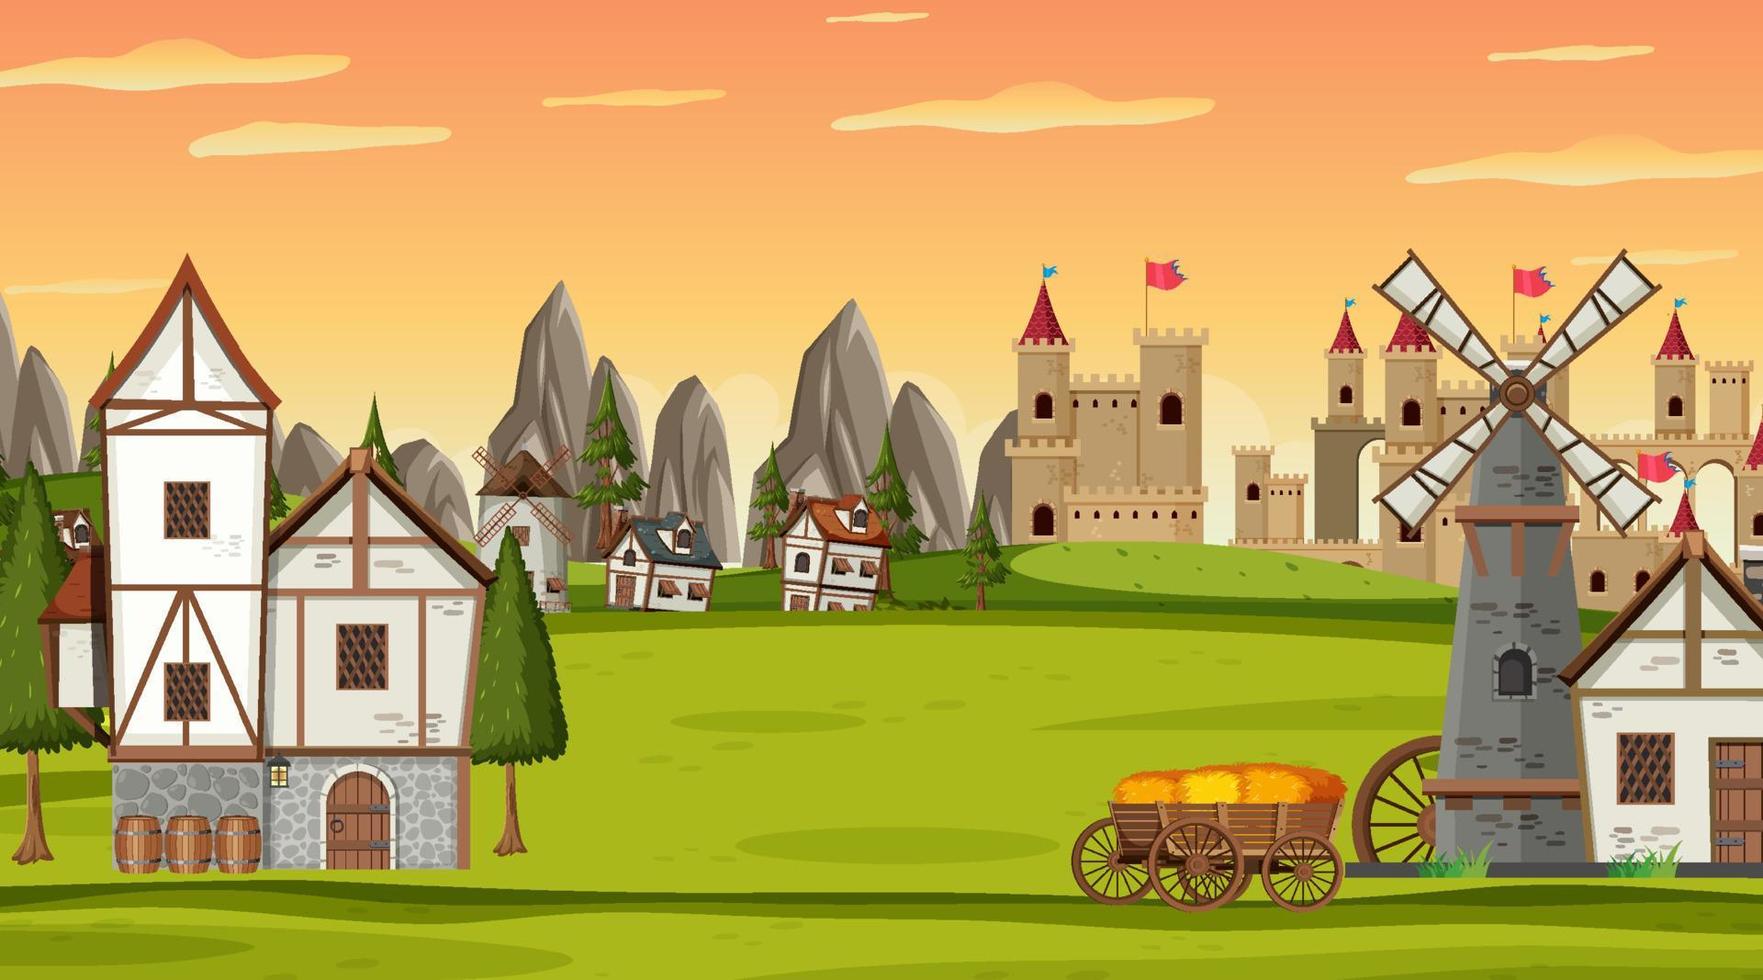 escena de la ciudad medieval en estilo de dibujos animados vector